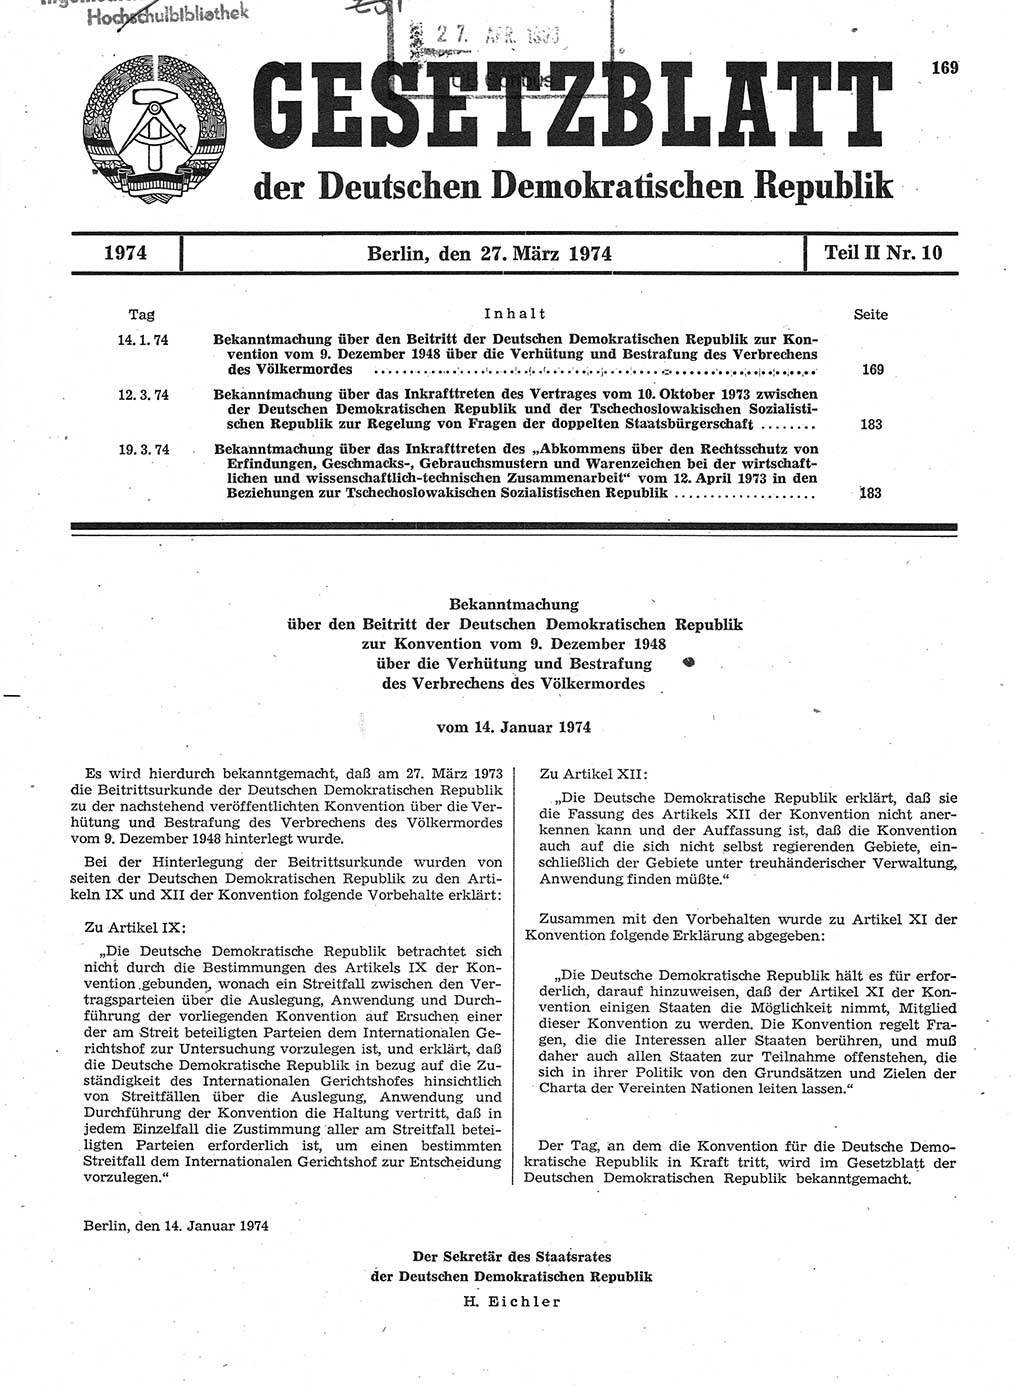 Gesetzblatt (GBl.) der Deutschen Demokratischen Republik (DDR) Teil ⅠⅠ 1974, Seite 169 (GBl. DDR ⅠⅠ 1974, S. 169)